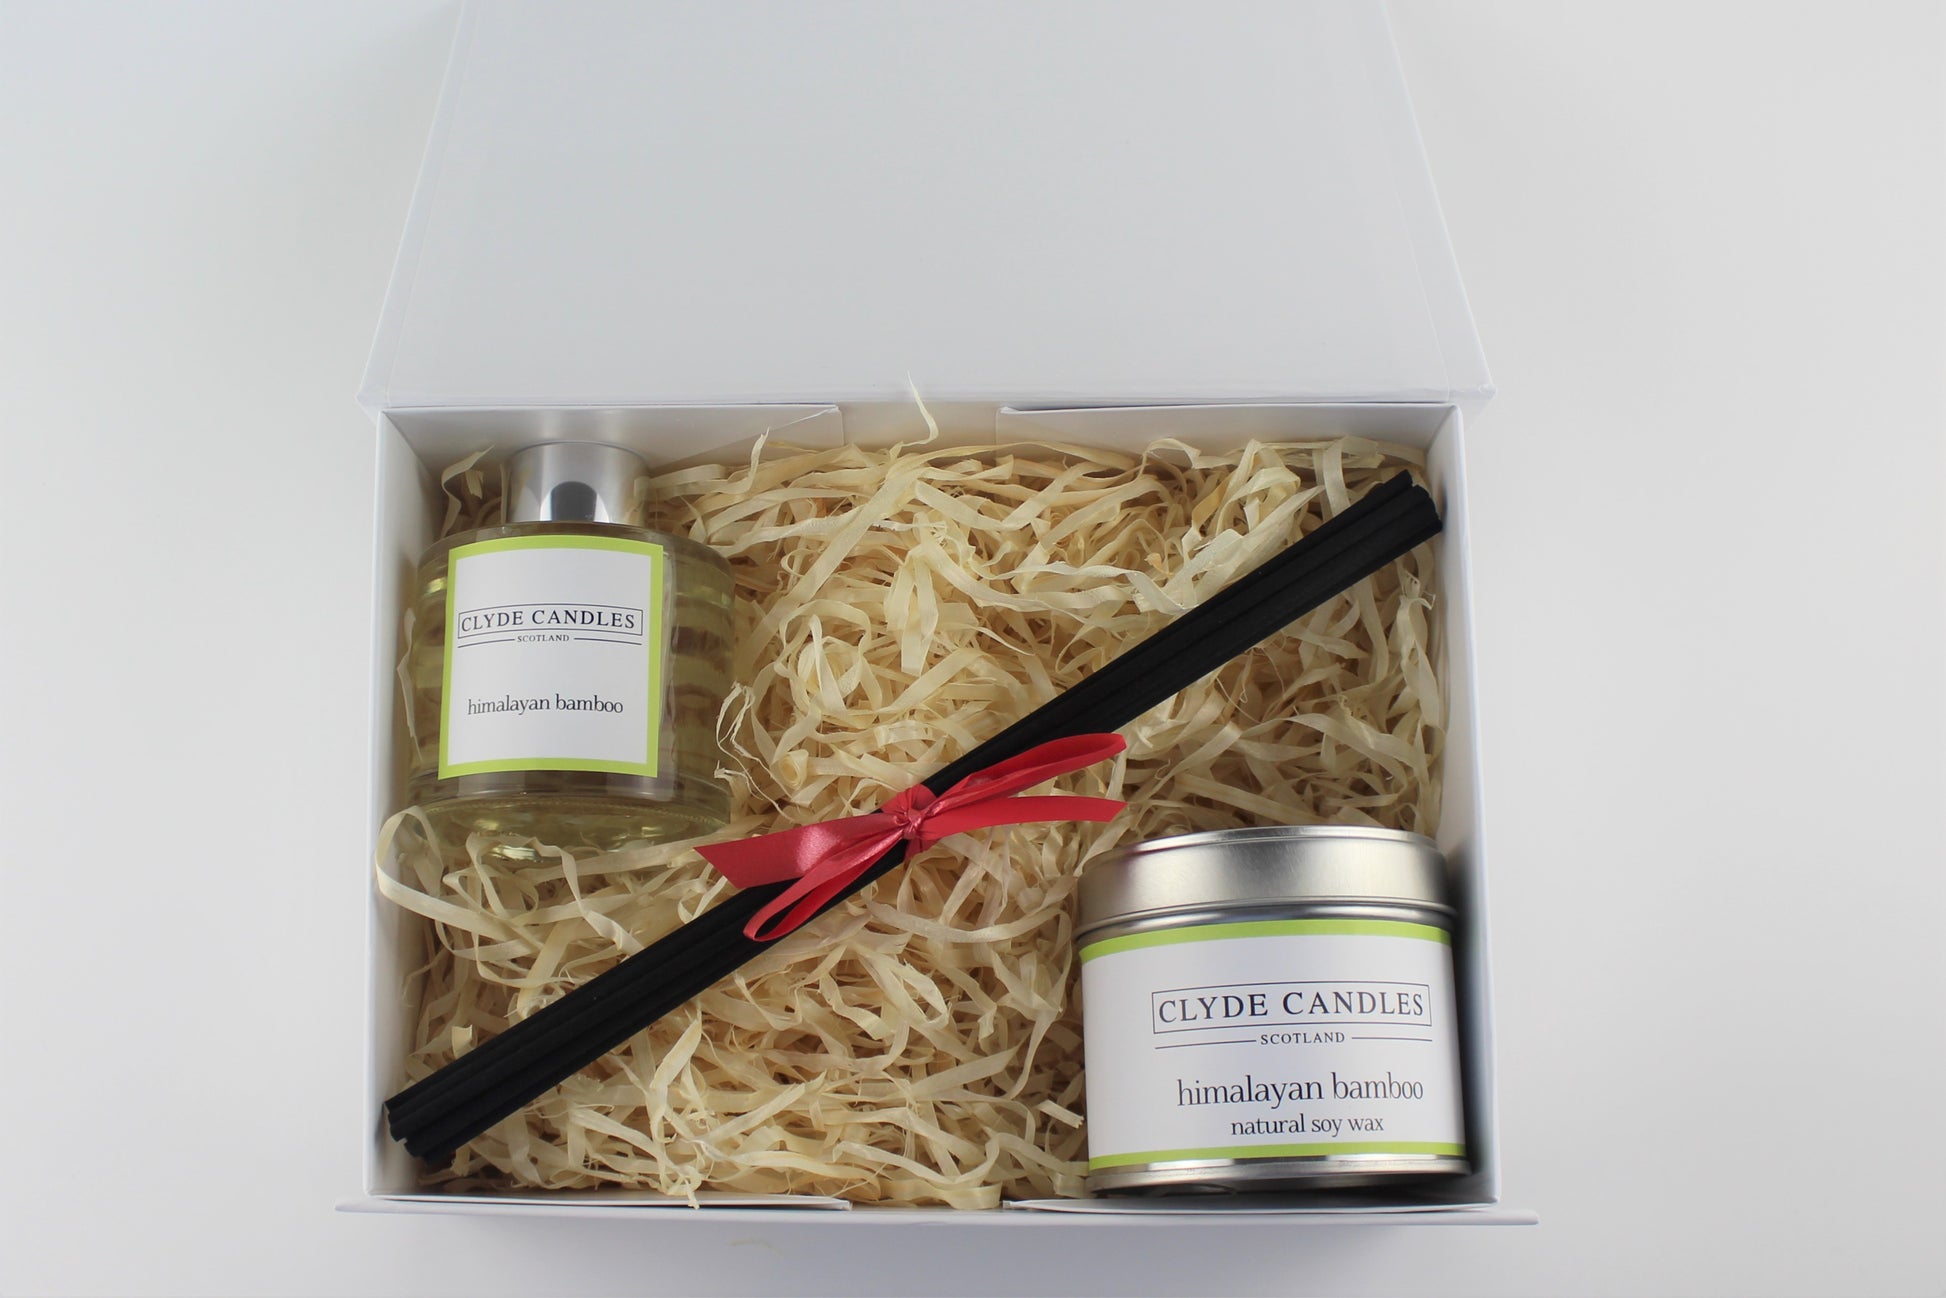 Himalayan Bamboo Diffuser & Candle Gift Box Set - Scottish Natural Soy Candle